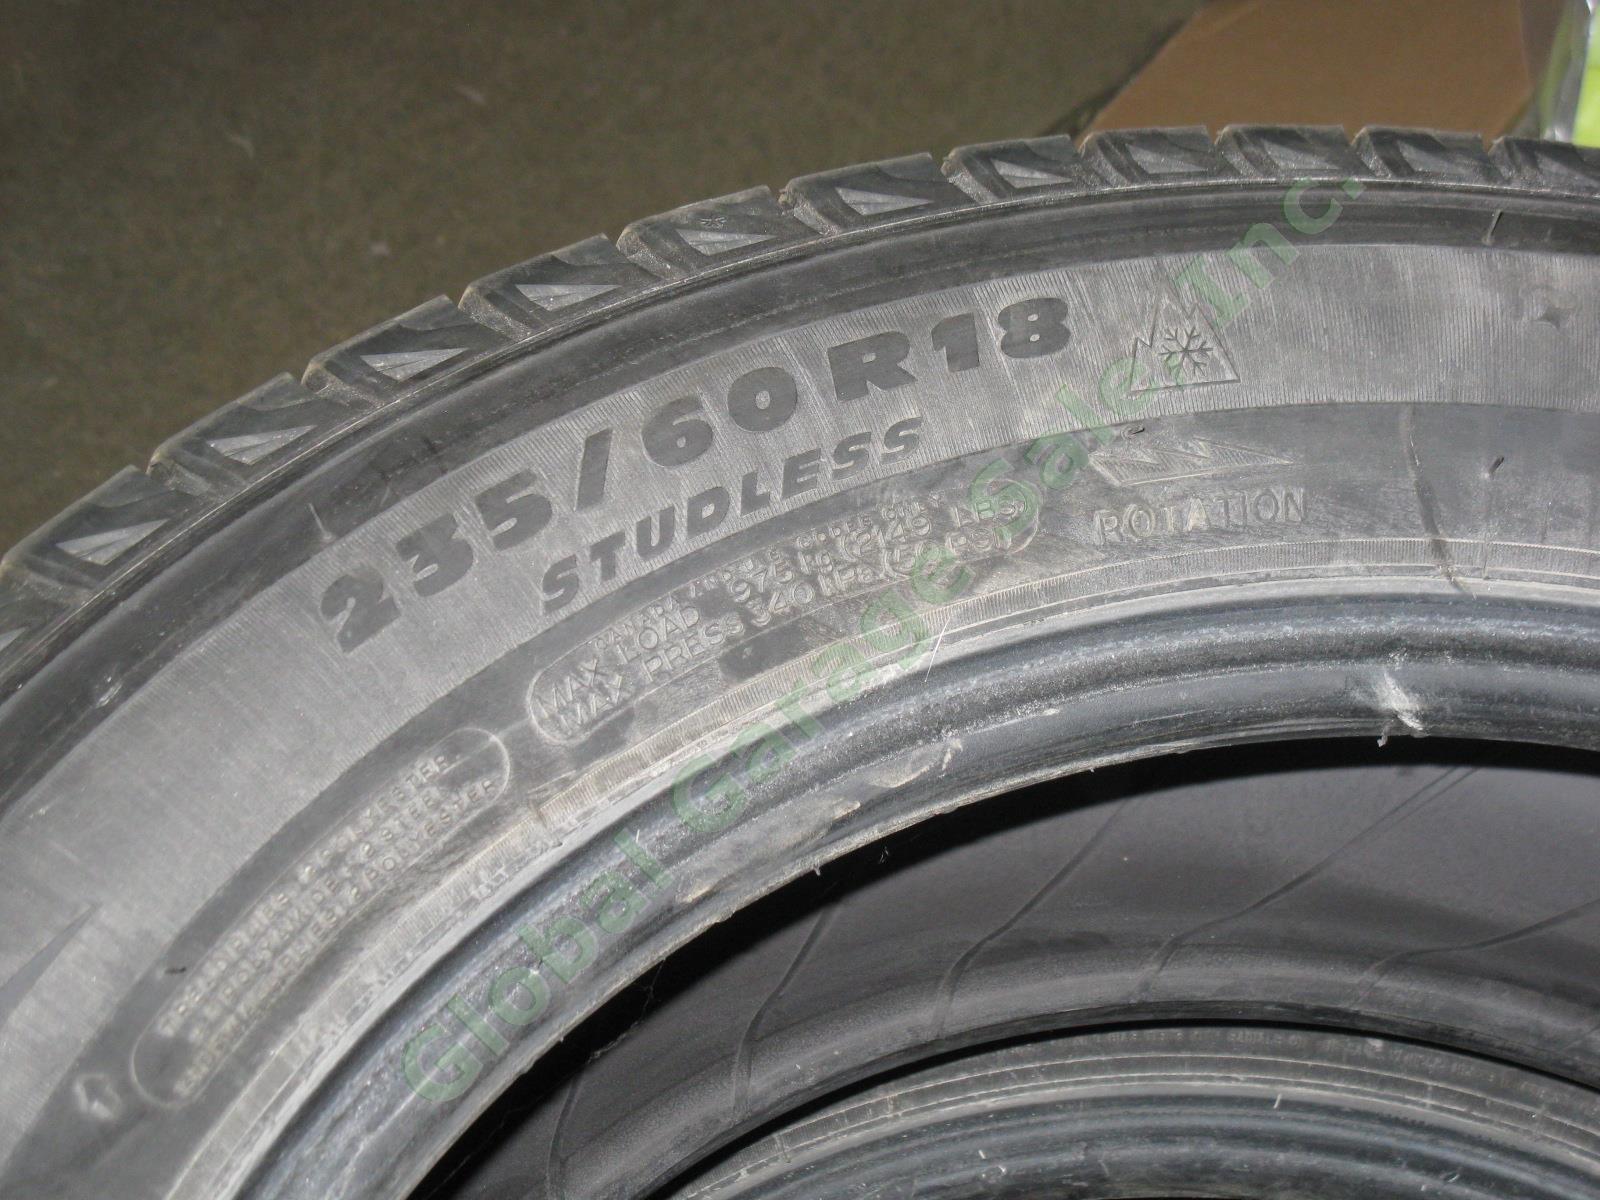 4 Michelin Latitude 18" X-Ice M+S Mud Snow Tires 235/60/R18 Acura RDX 8/32" EXC! 3